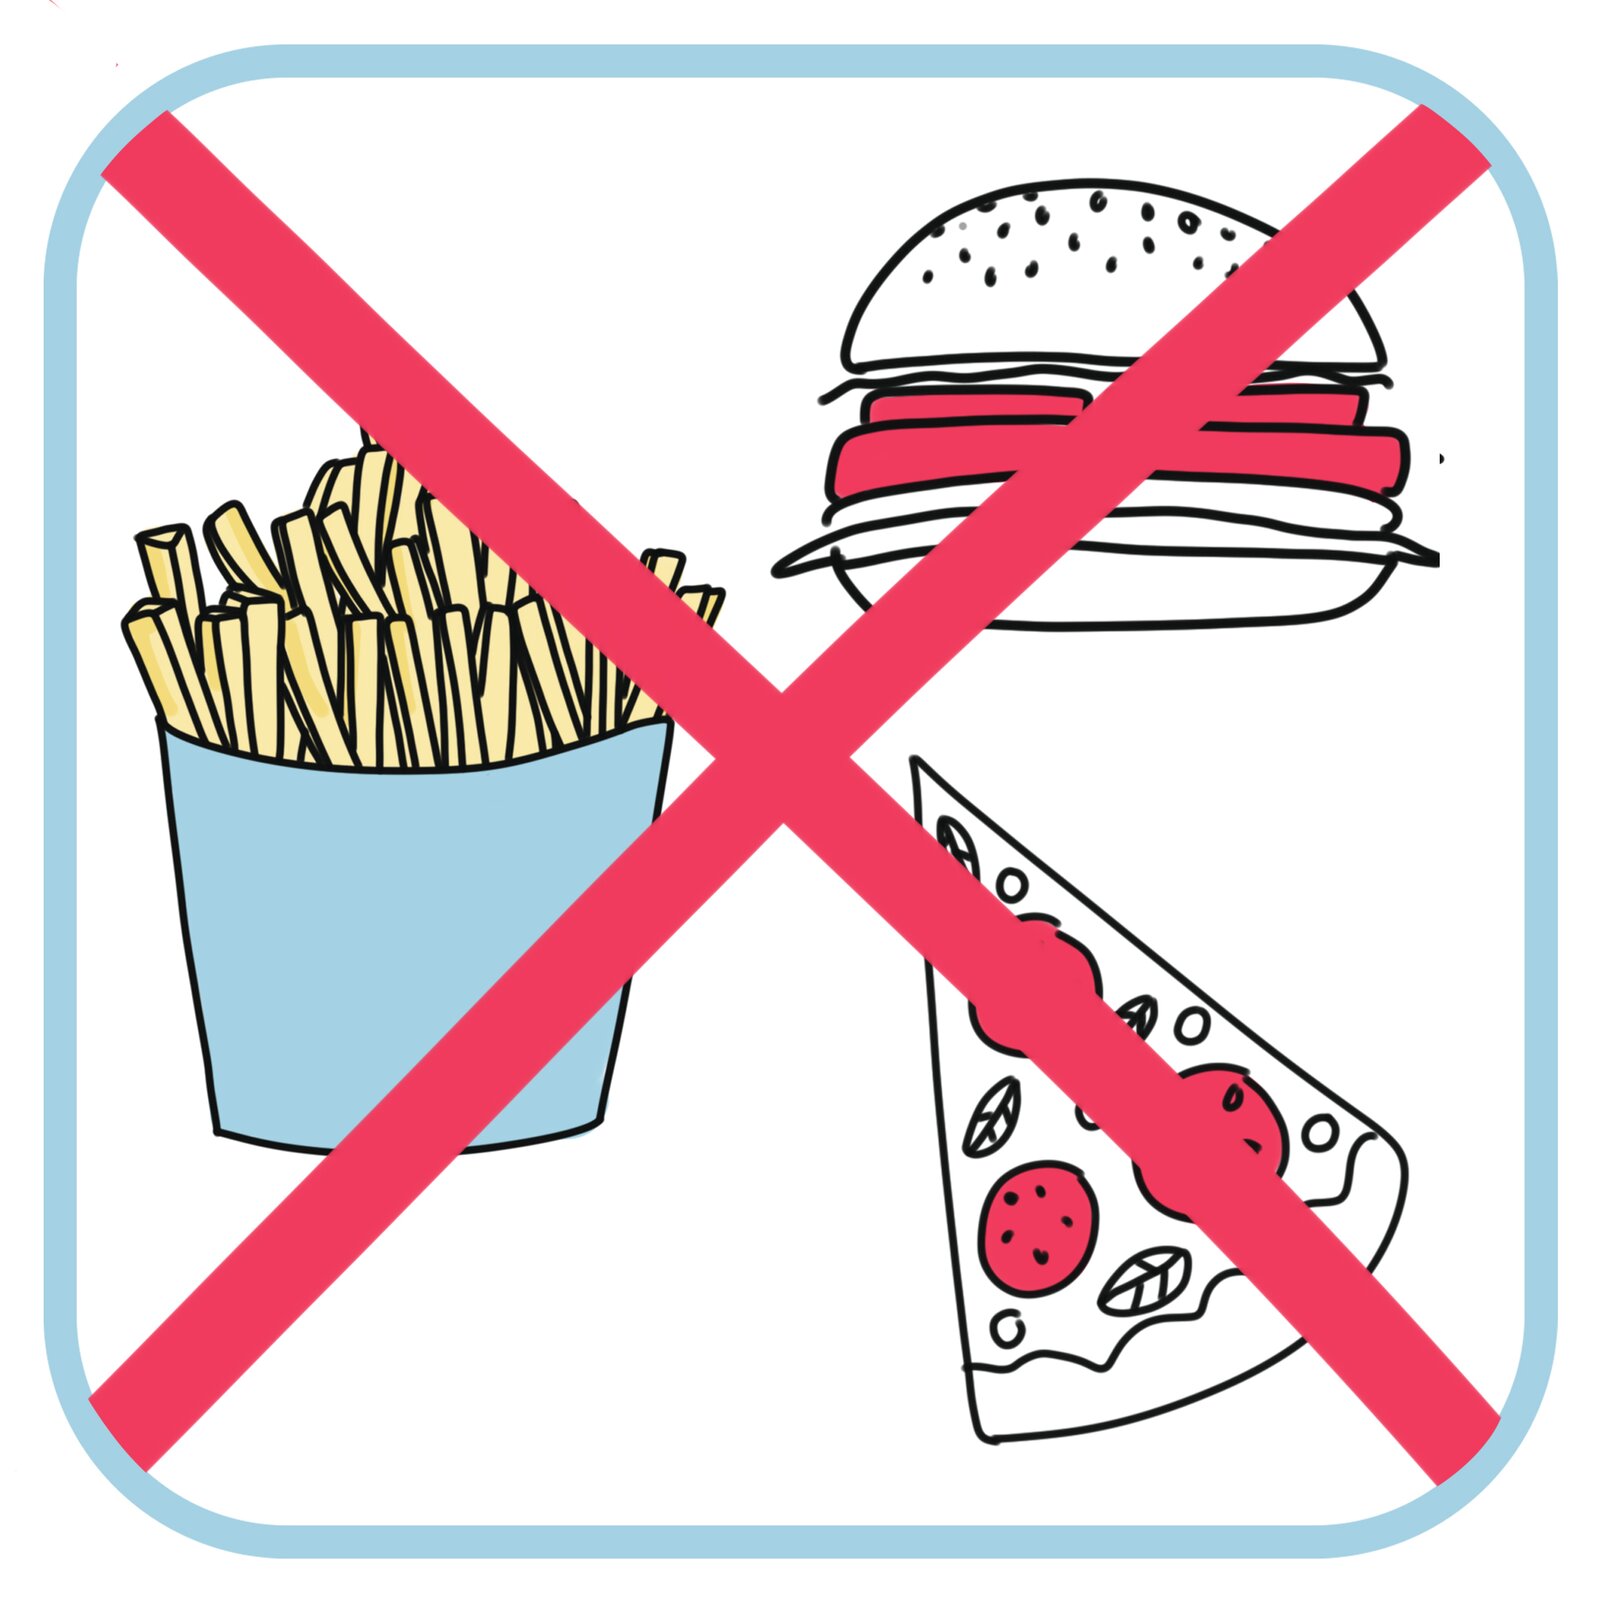 Od lewej: frytki, hamburger i kawałek pizzy. Cały rysunek jest przekreślony czerwonym krzyżykiem.